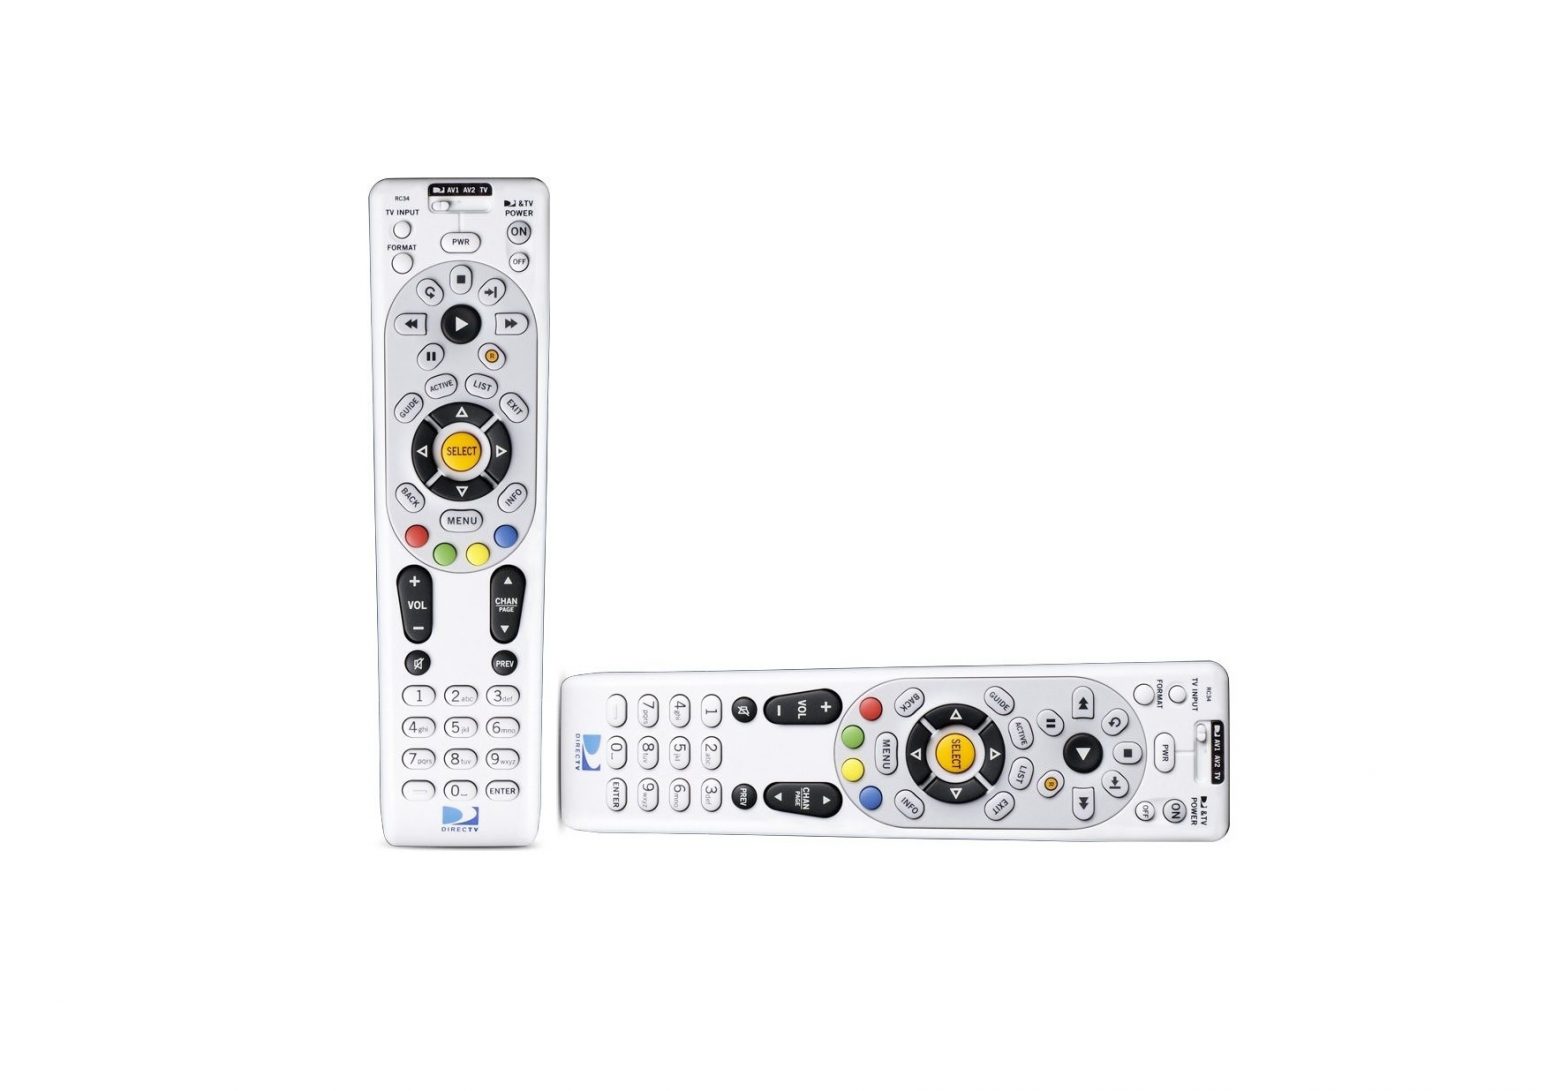 DirecTV Universal Remote Control User Guide